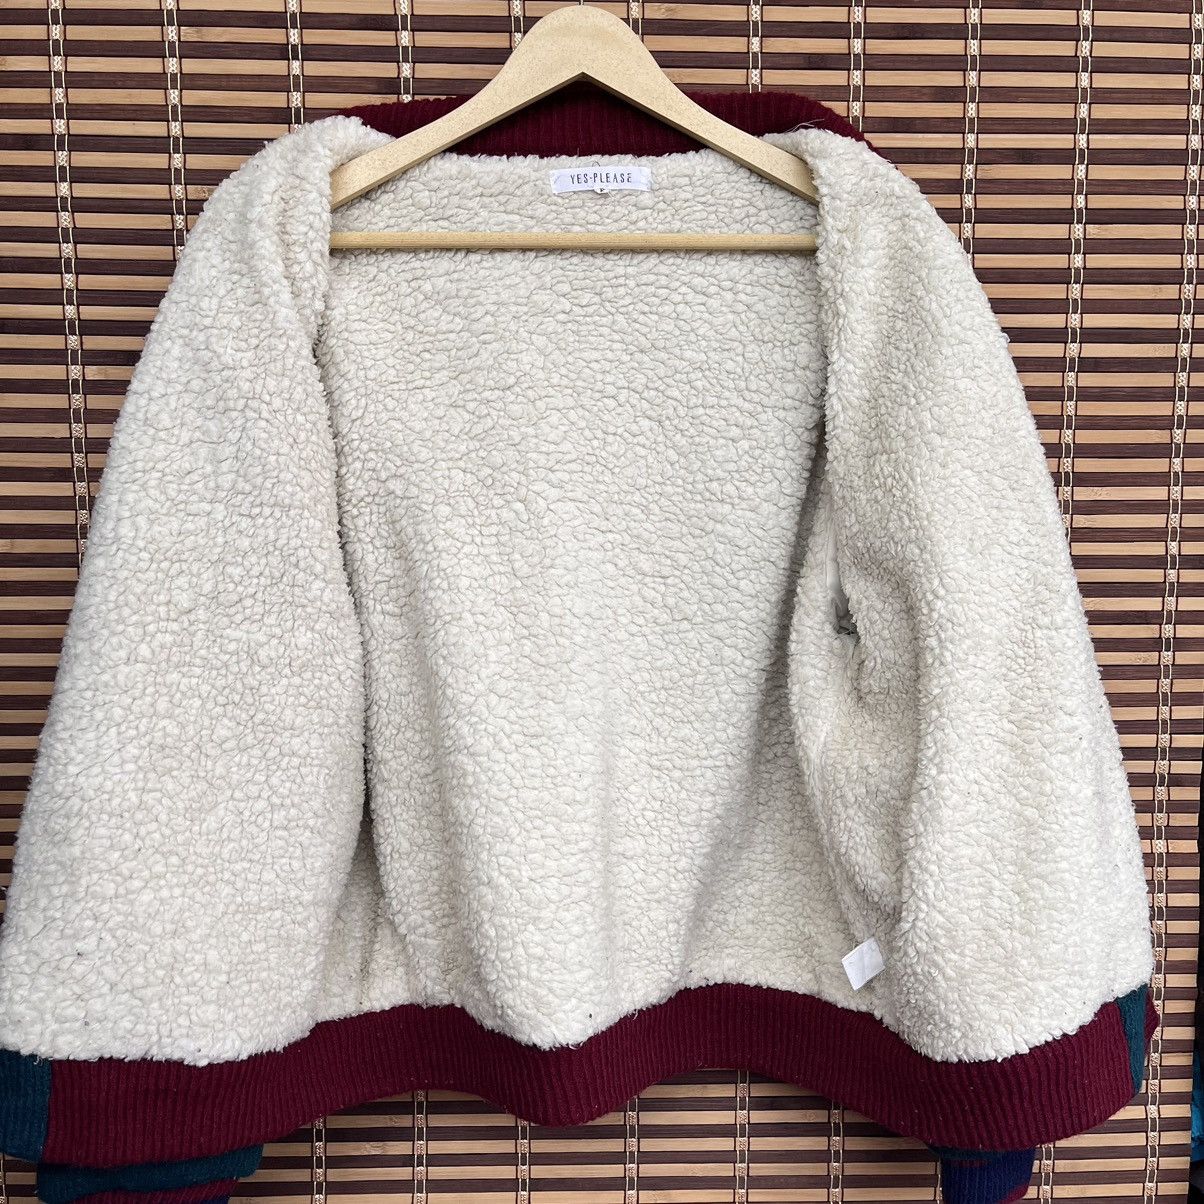 Vintage - Grails Wool Knitwear Sweater American Champ 1957 - 14